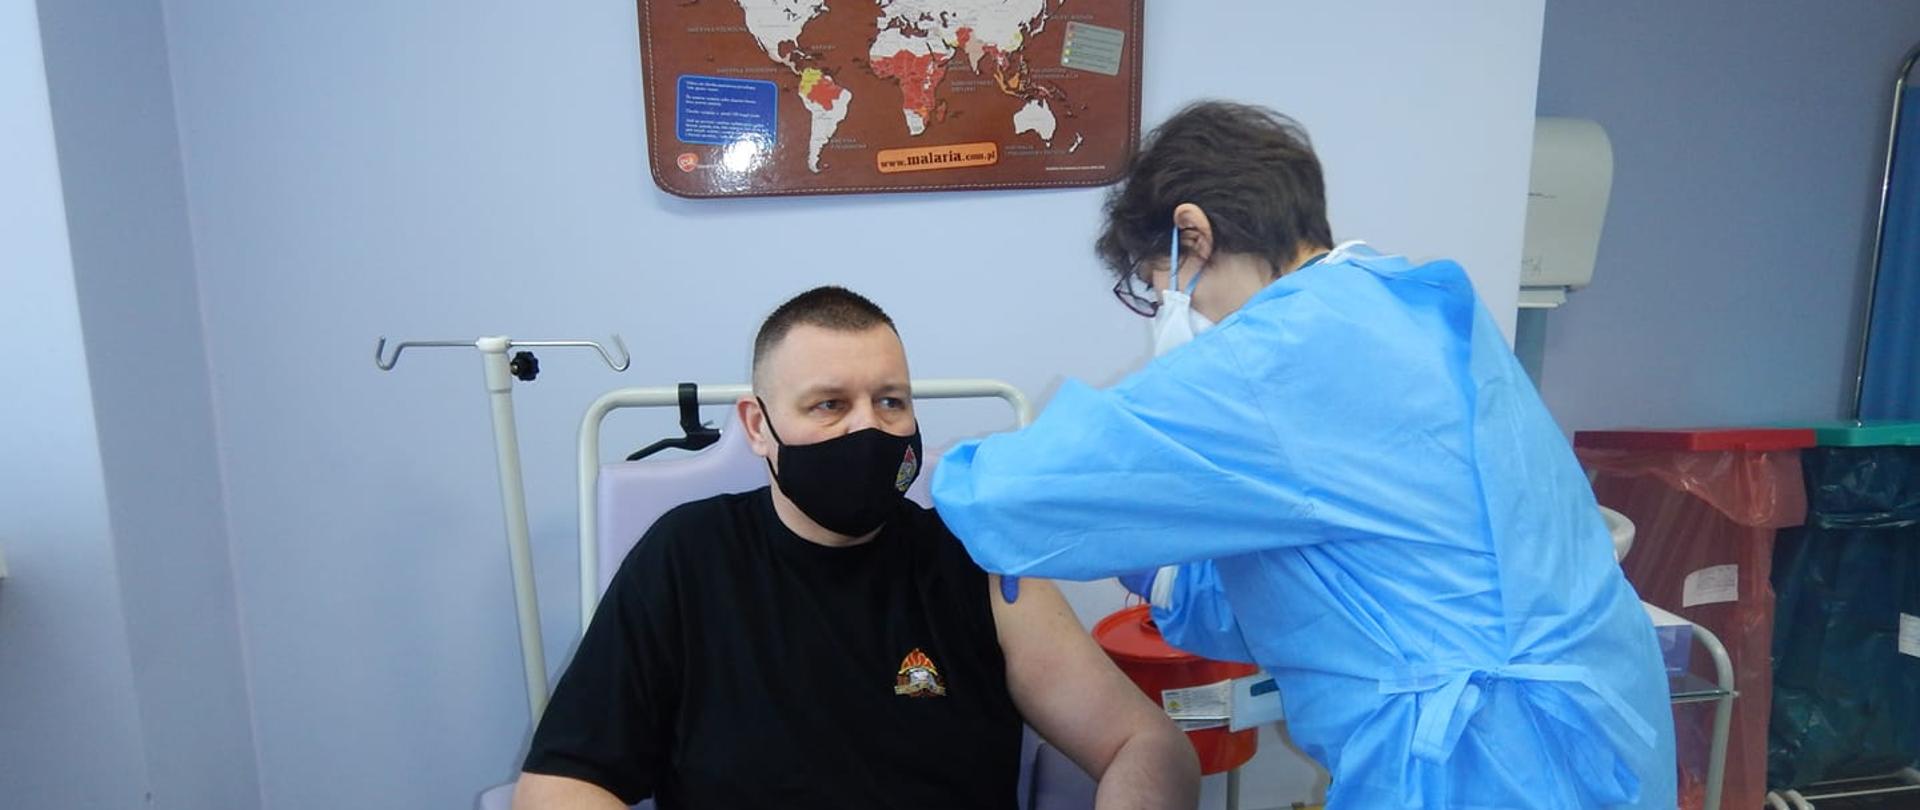 Zastępca Komendanta Miejskiego PSP w Łodzi podczas szczepienia przeciwko Covid-19